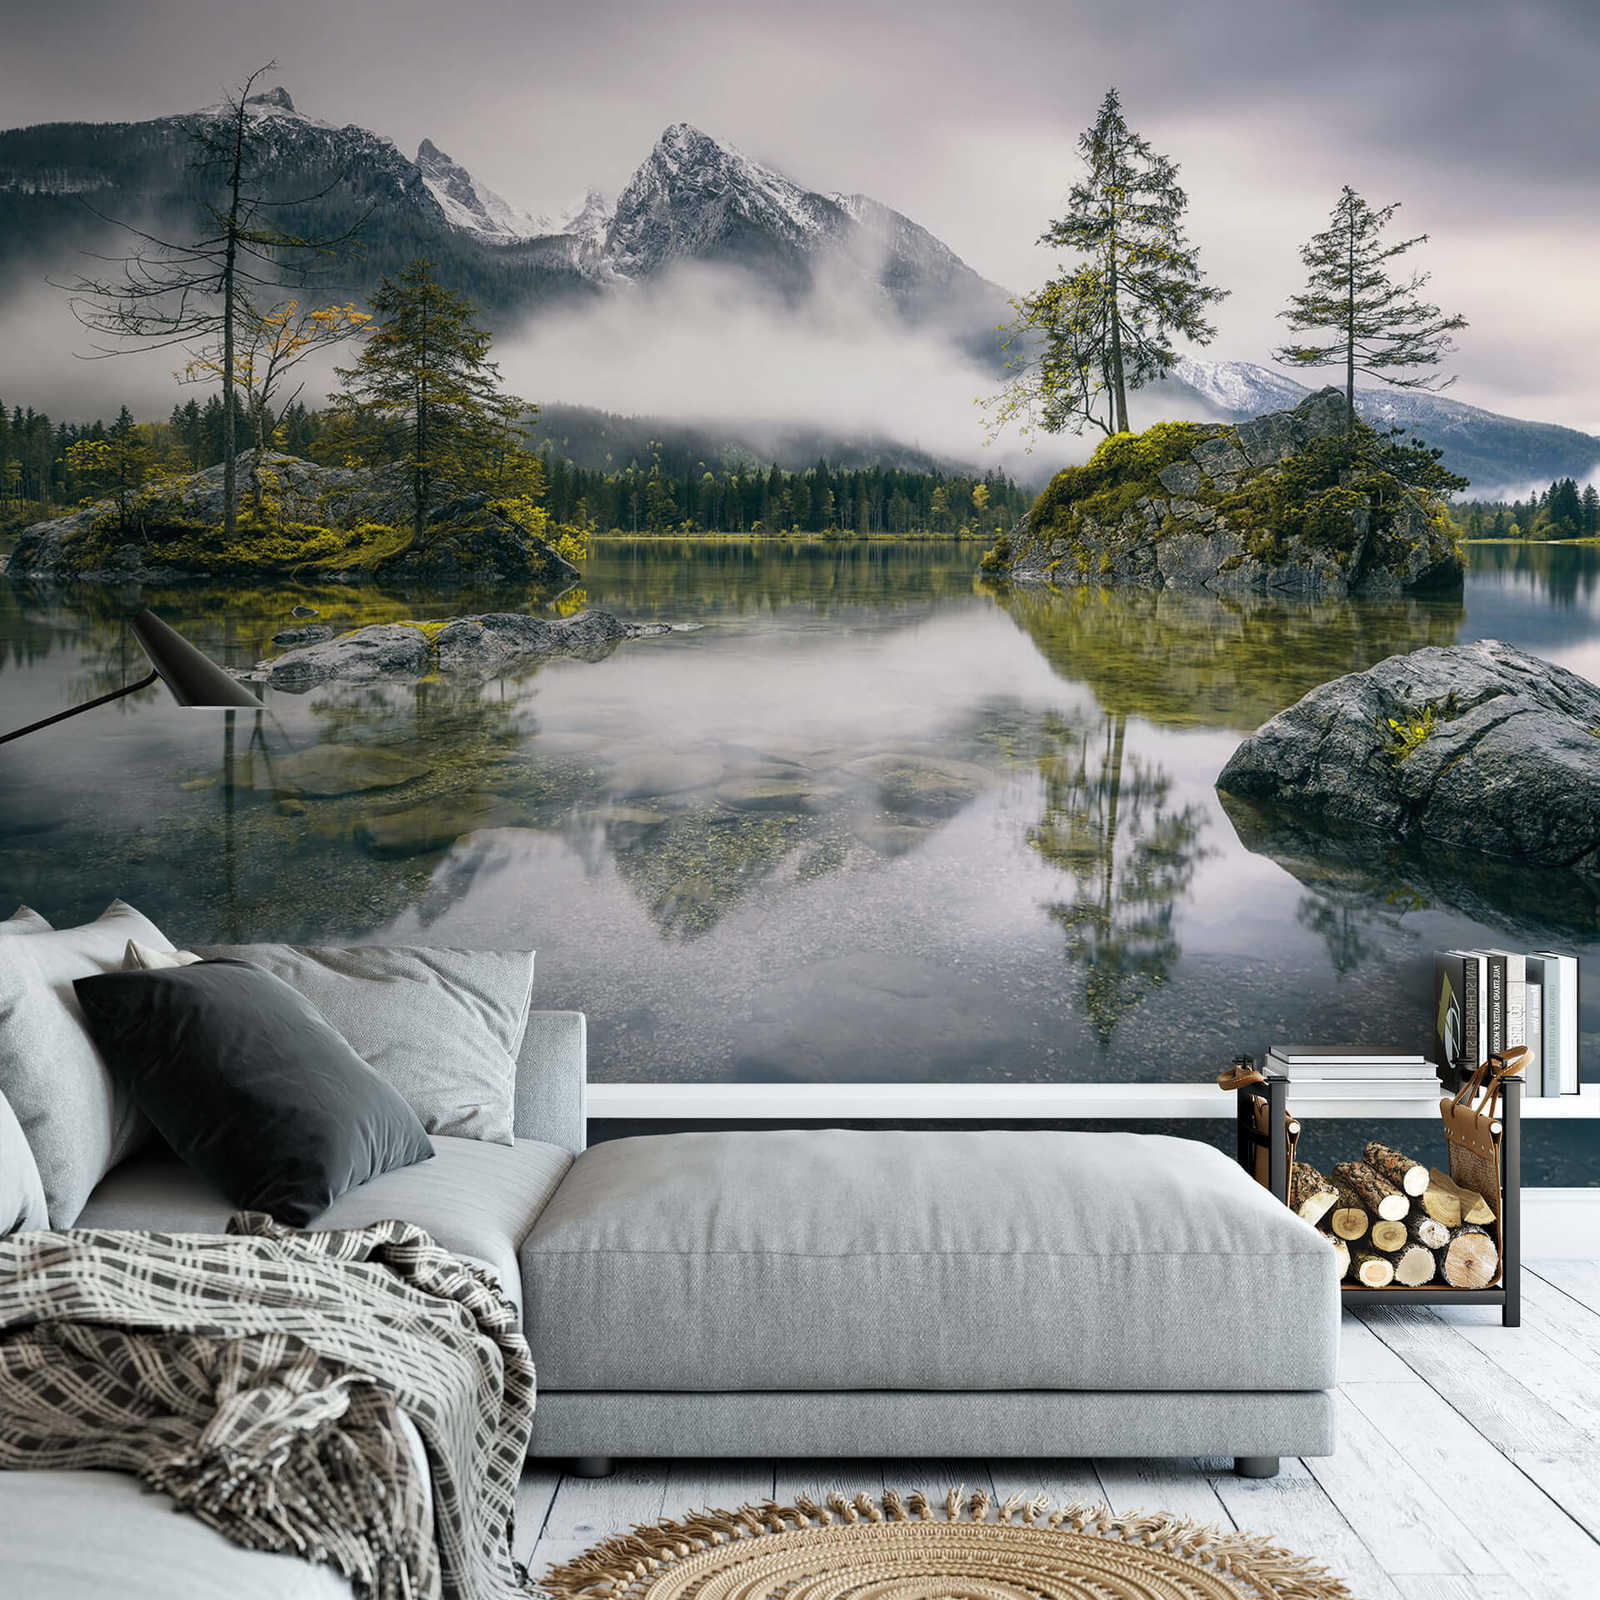             Papier peint panoramique vue sur le lac - vert, blanc, gris
        